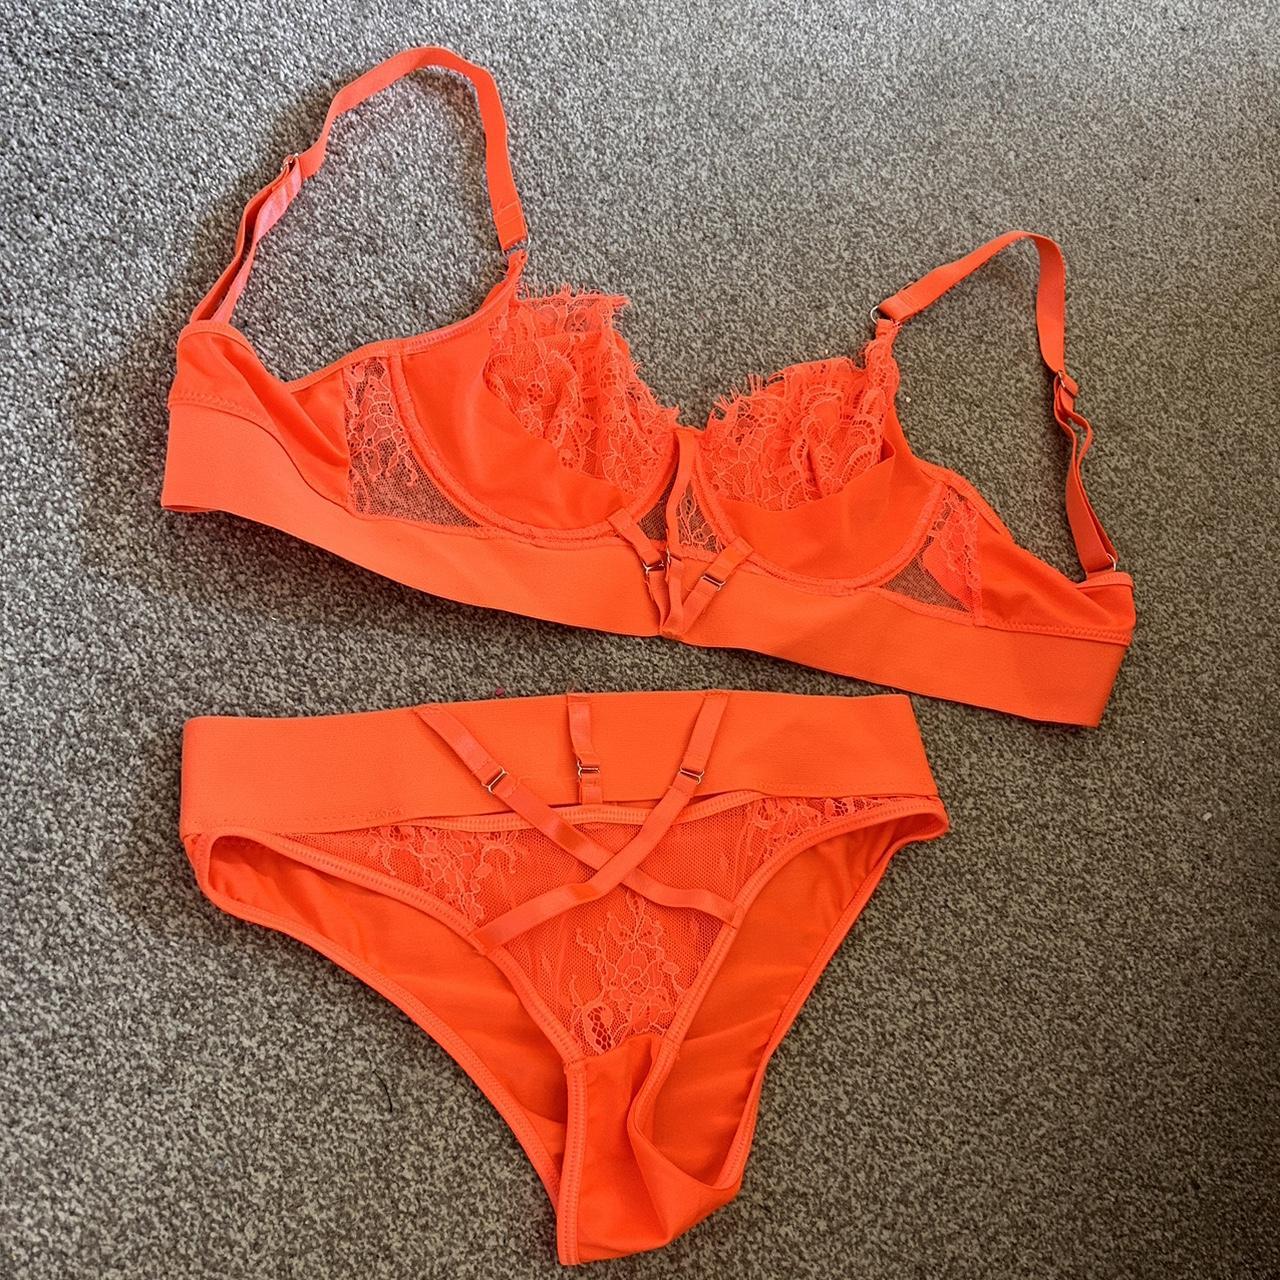 Neon orange bra and brief set Worn once for... - Depop